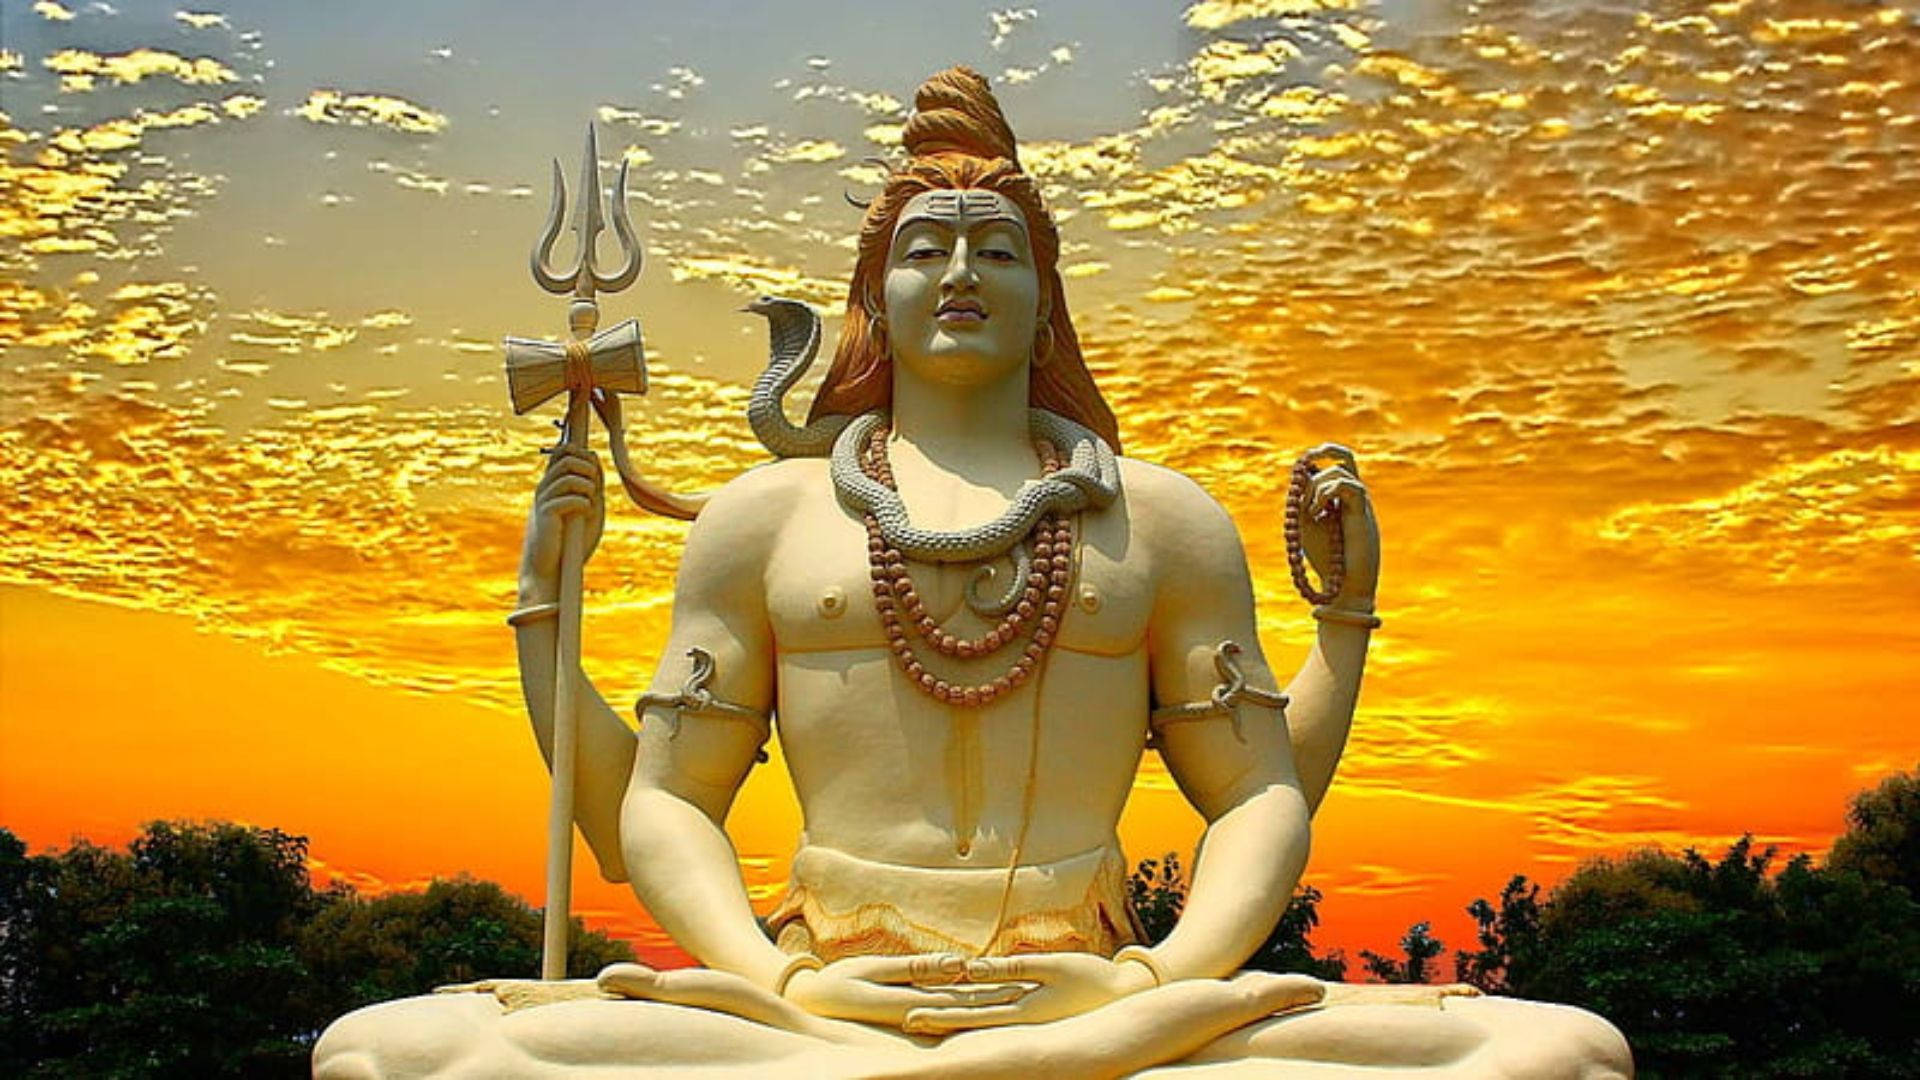 Lord Shiva Hd Sunset Statue Background